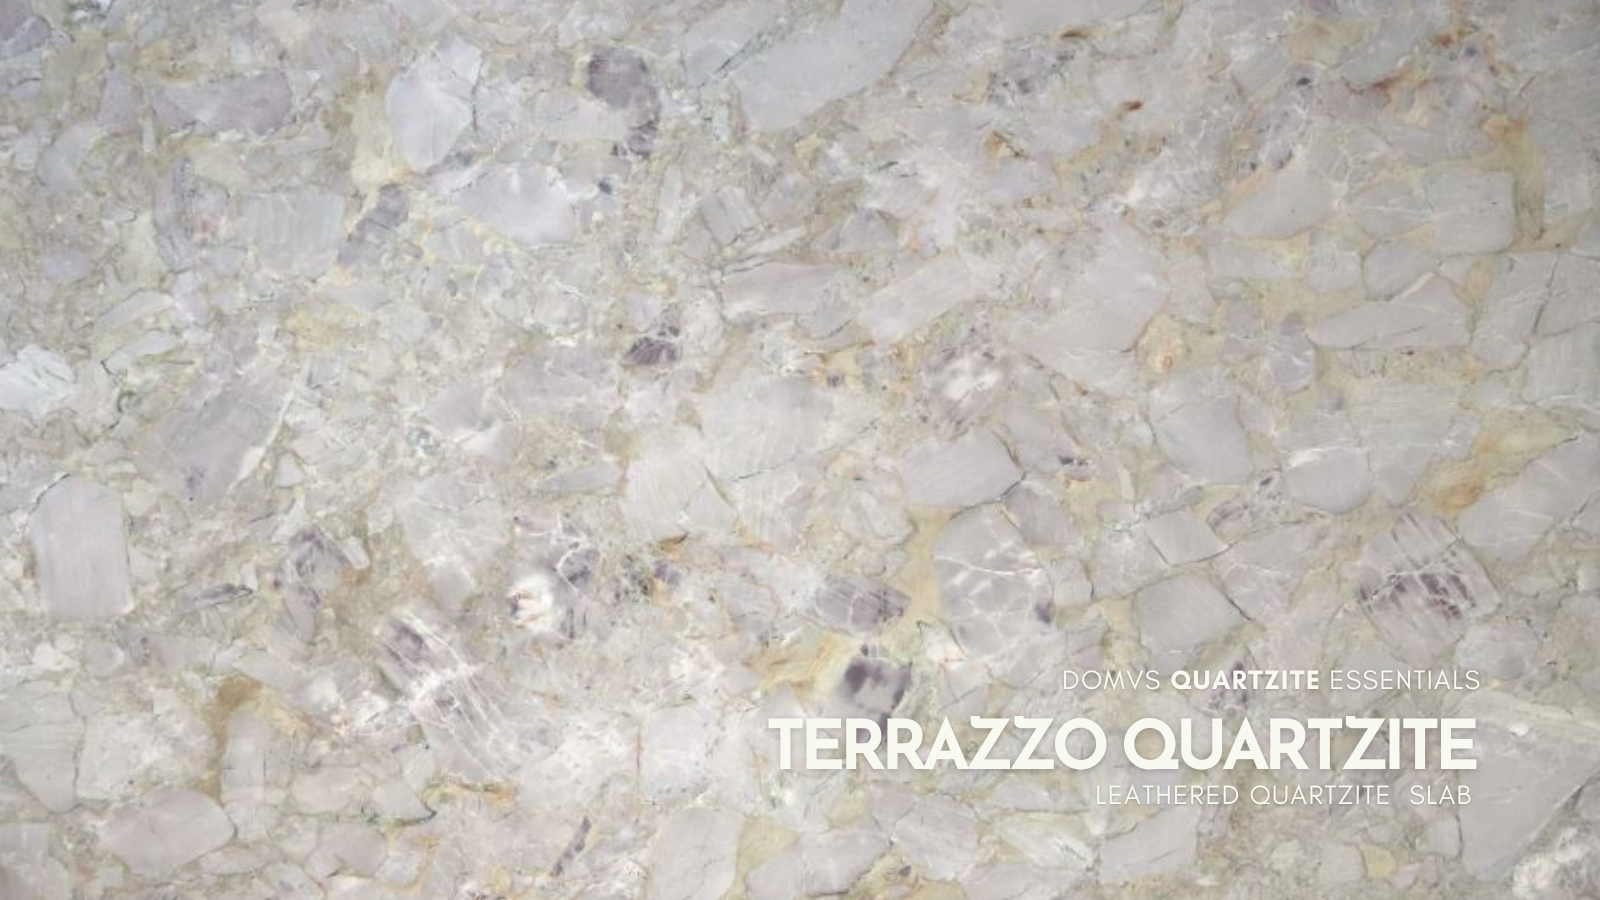 Terrazzo Quartzite Slab